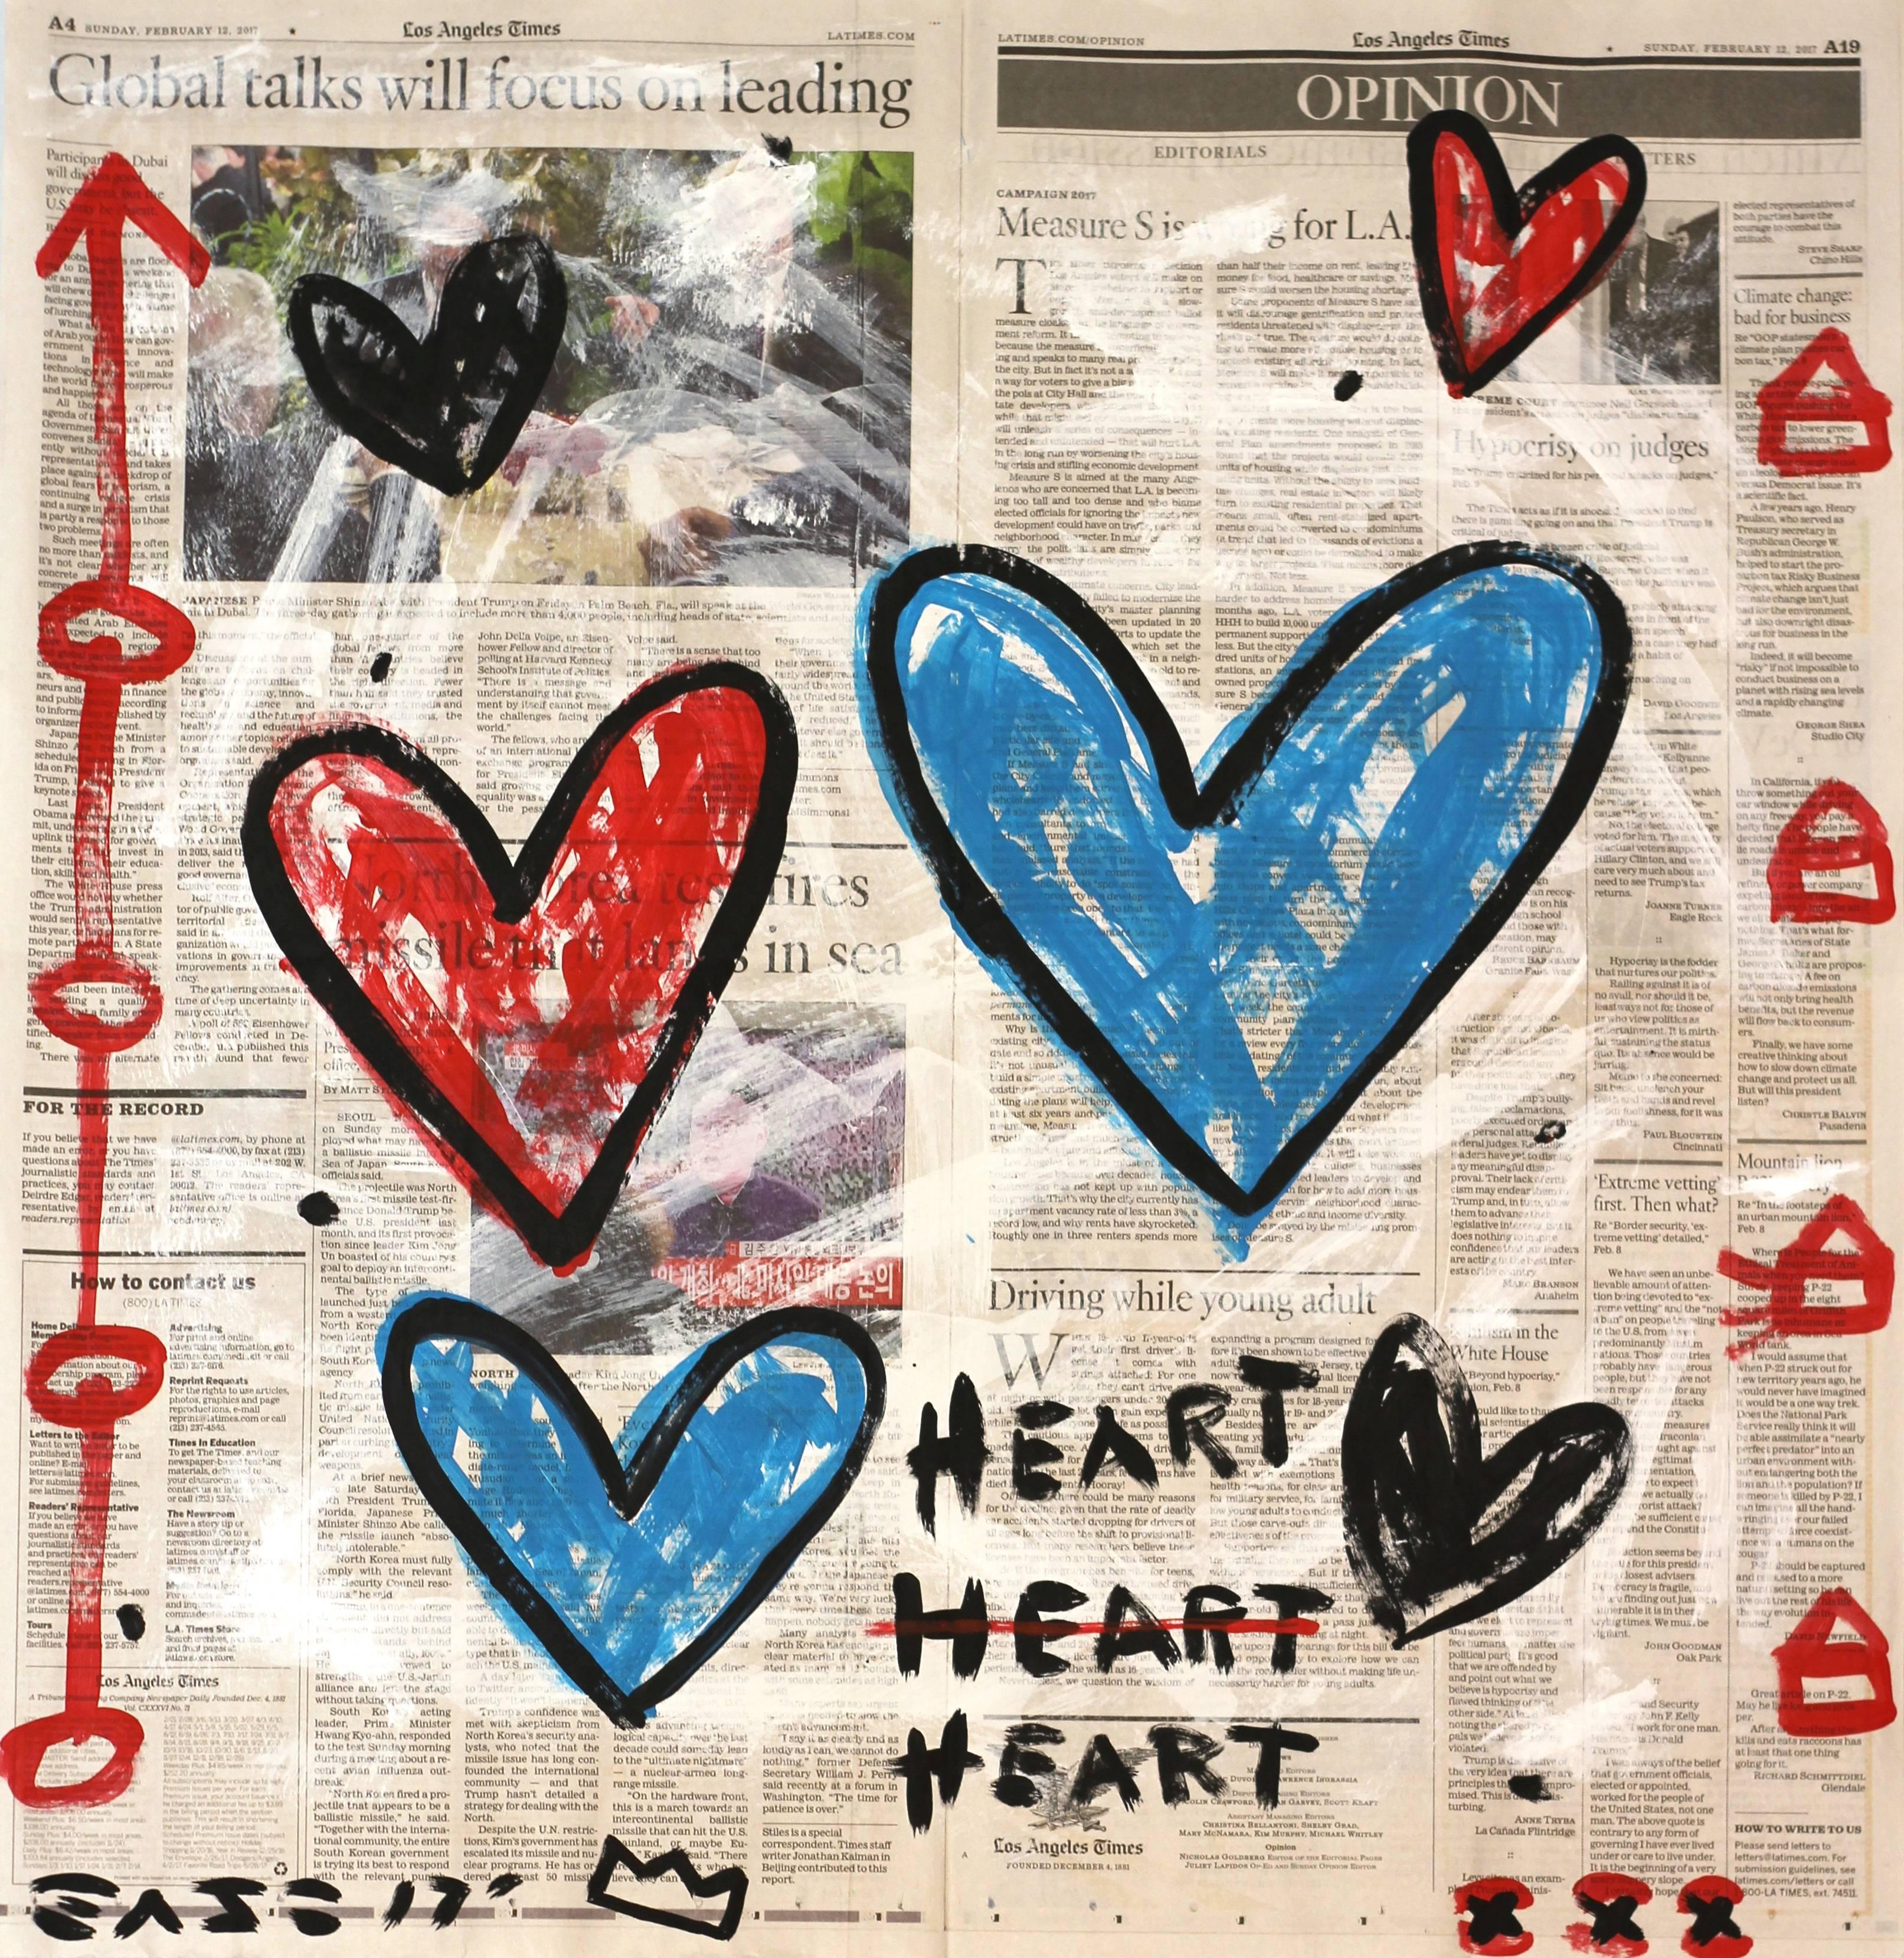 Gary John Abstract Painting - Cross My Heart